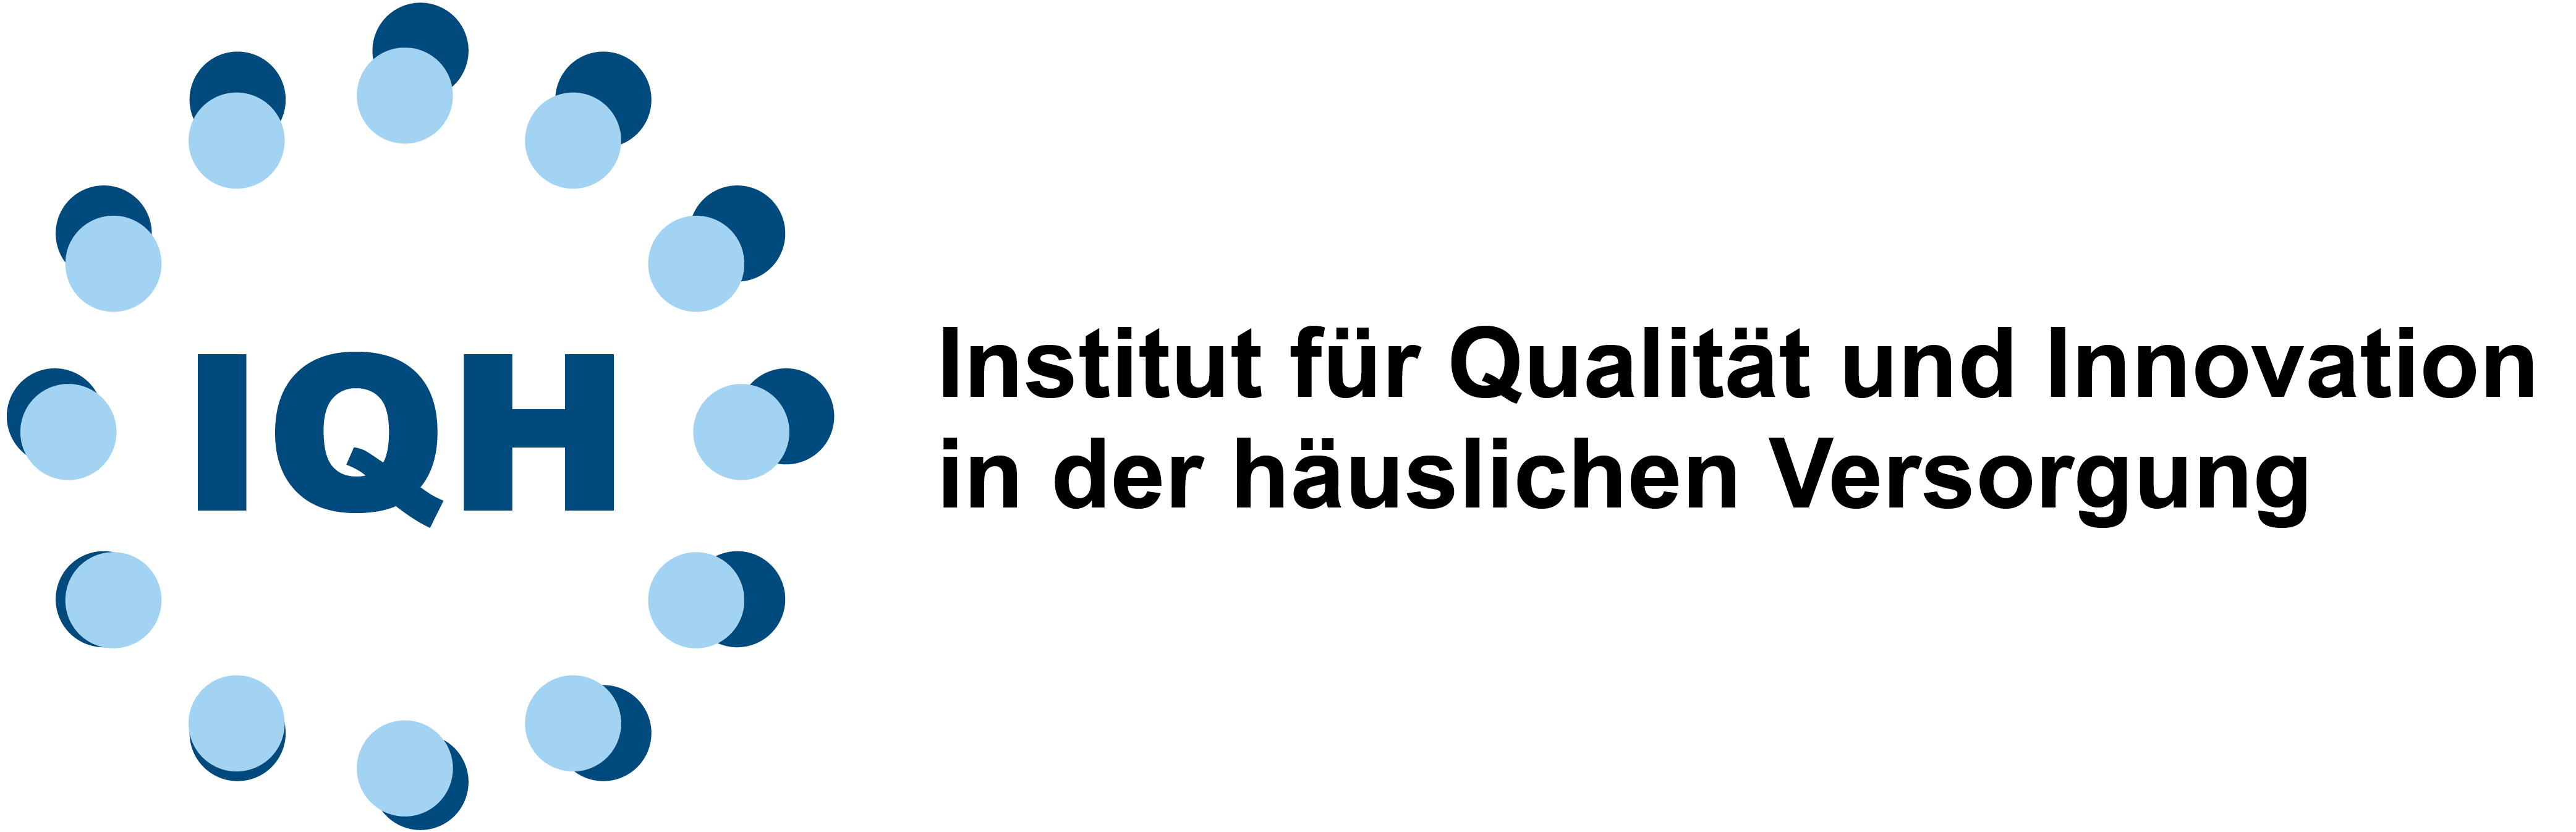 IQH Institut